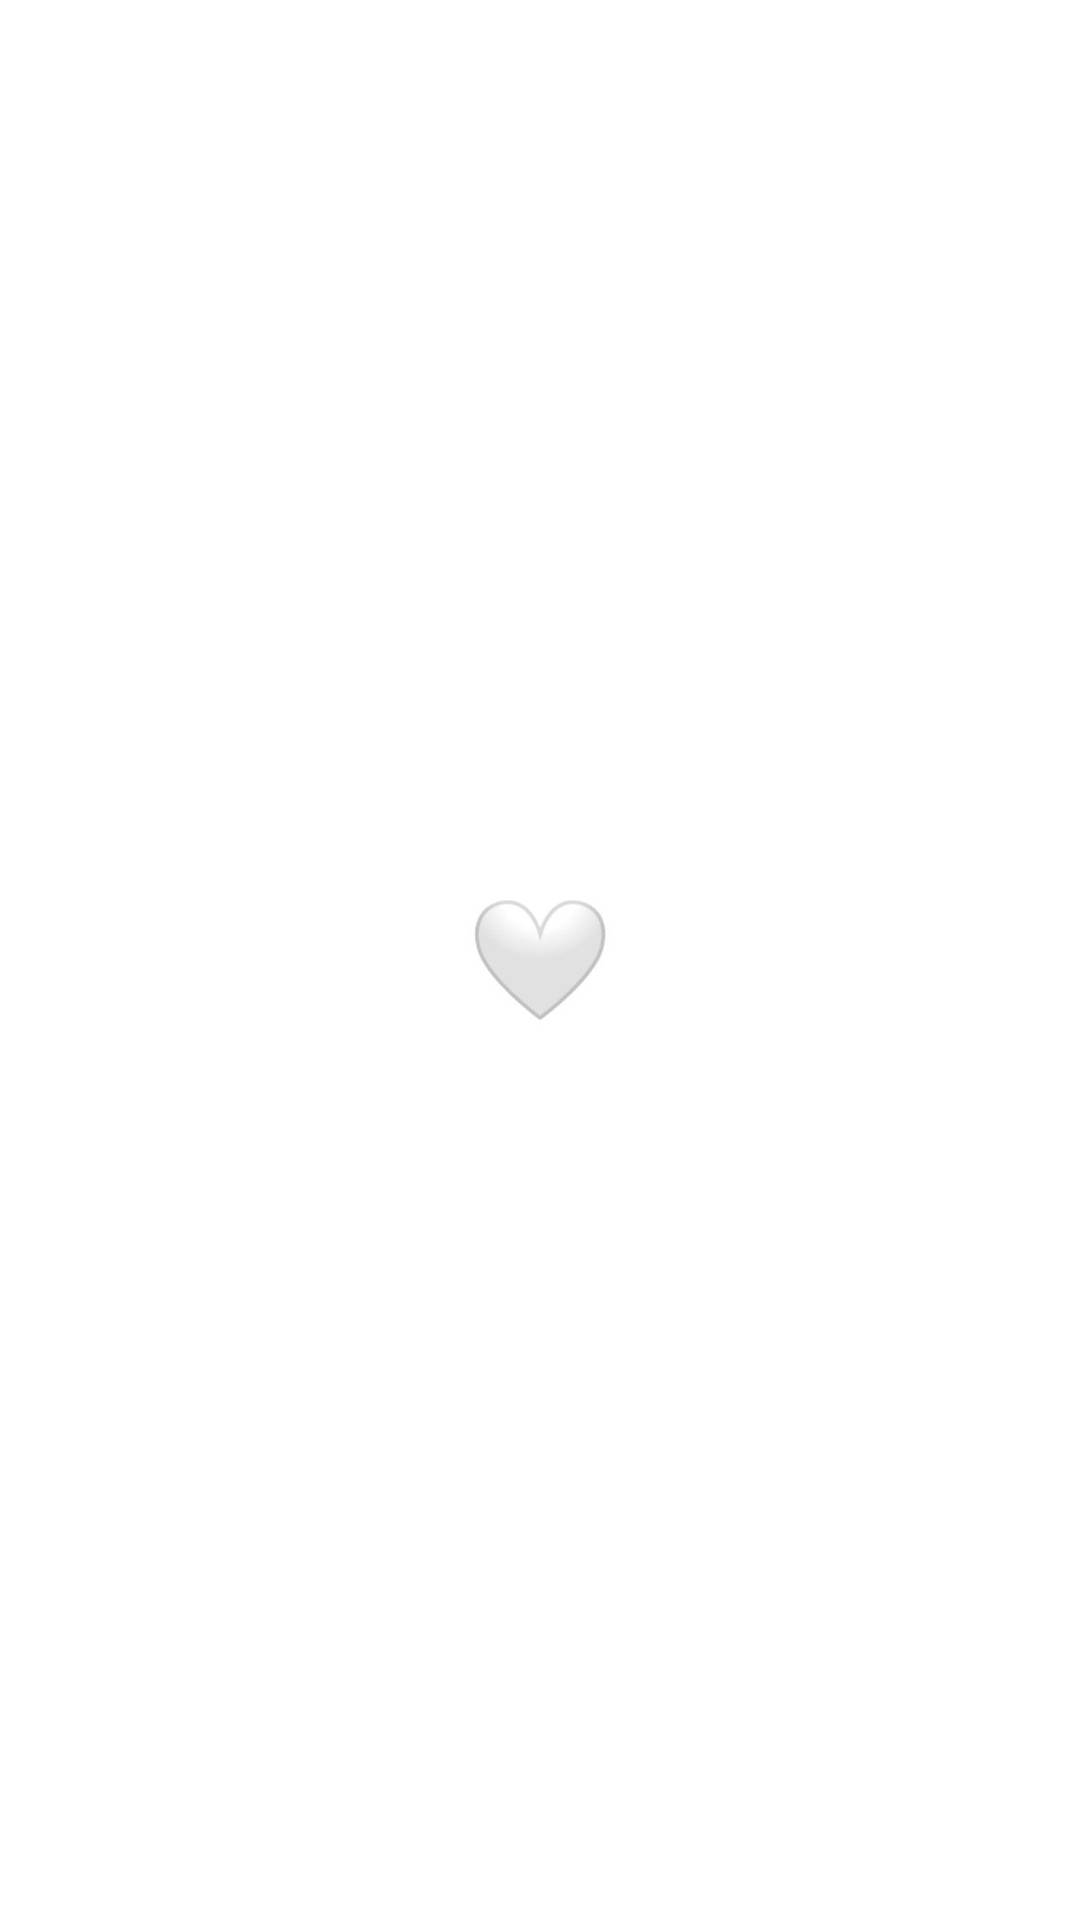 White Heart Emoticon Wallpaper